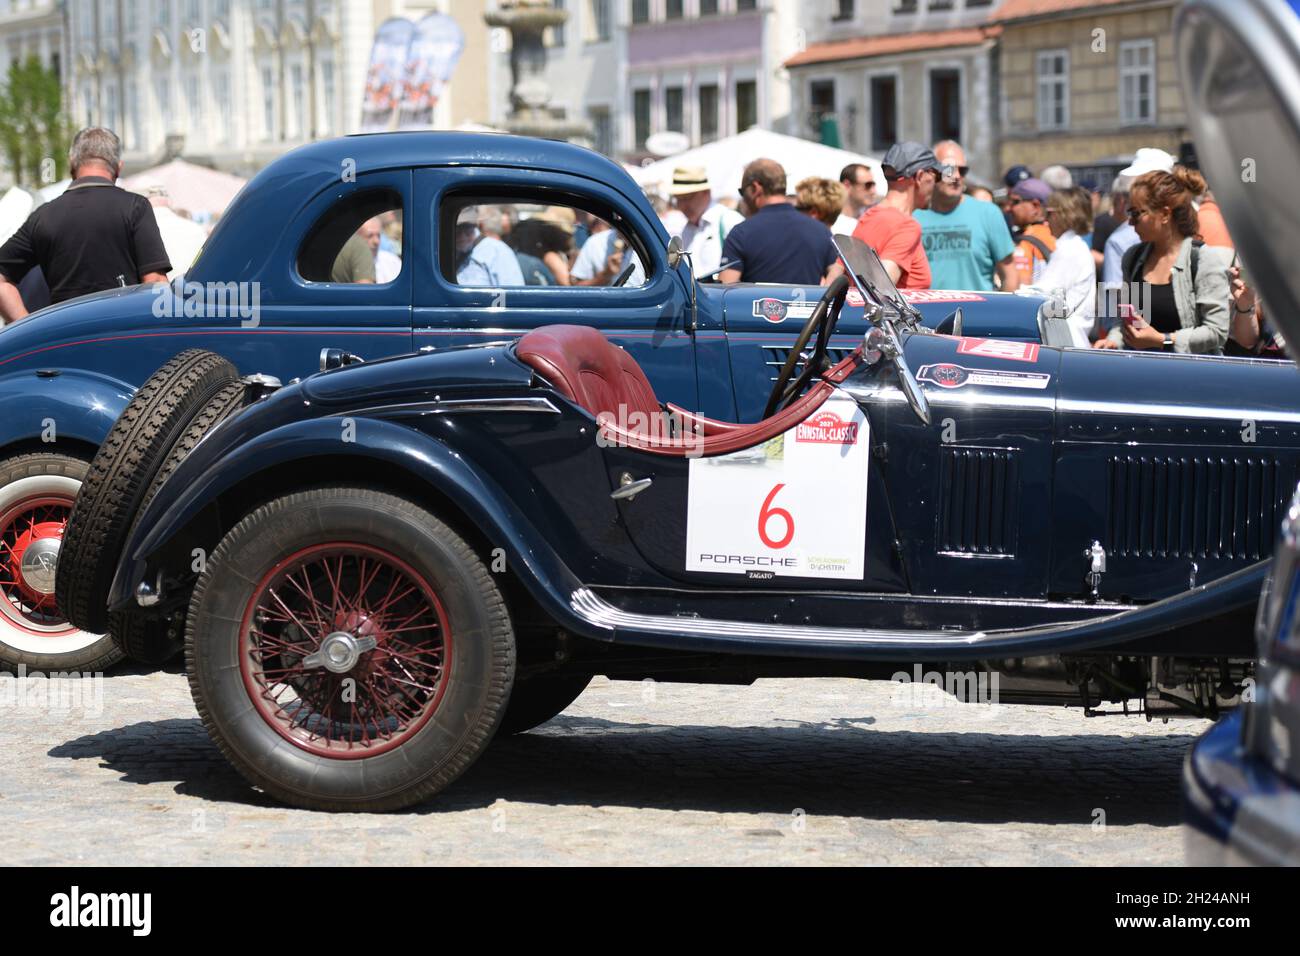 Die Ennstal-Classic ist eine der bekanntesten Oldtimer-Rallyes in Österreich und Europa für historische Automobile - l'Ennstal-Classic è uno dei due Foto Stock